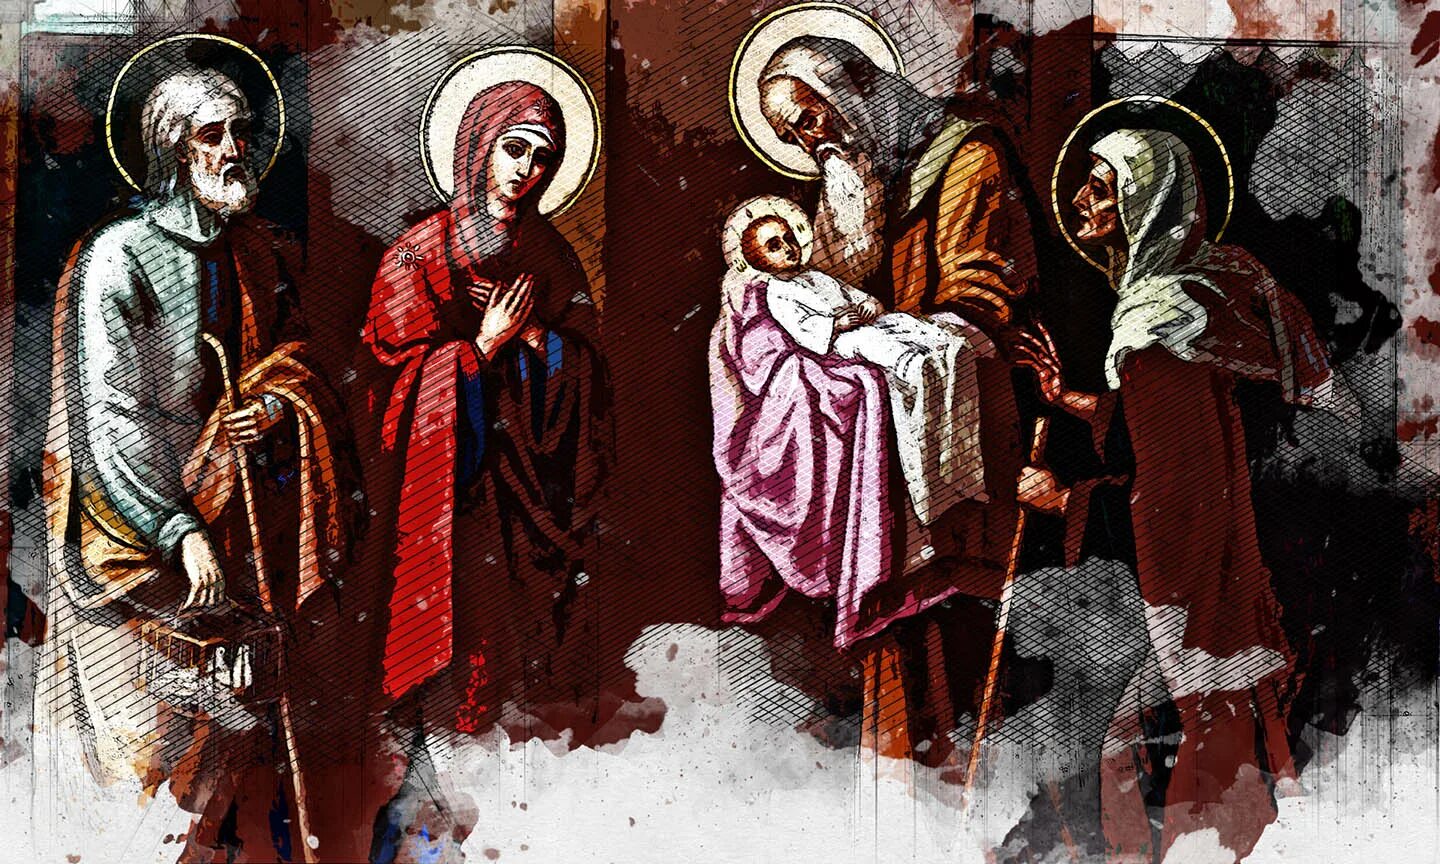 Православный праздник сегодня 15 февраля